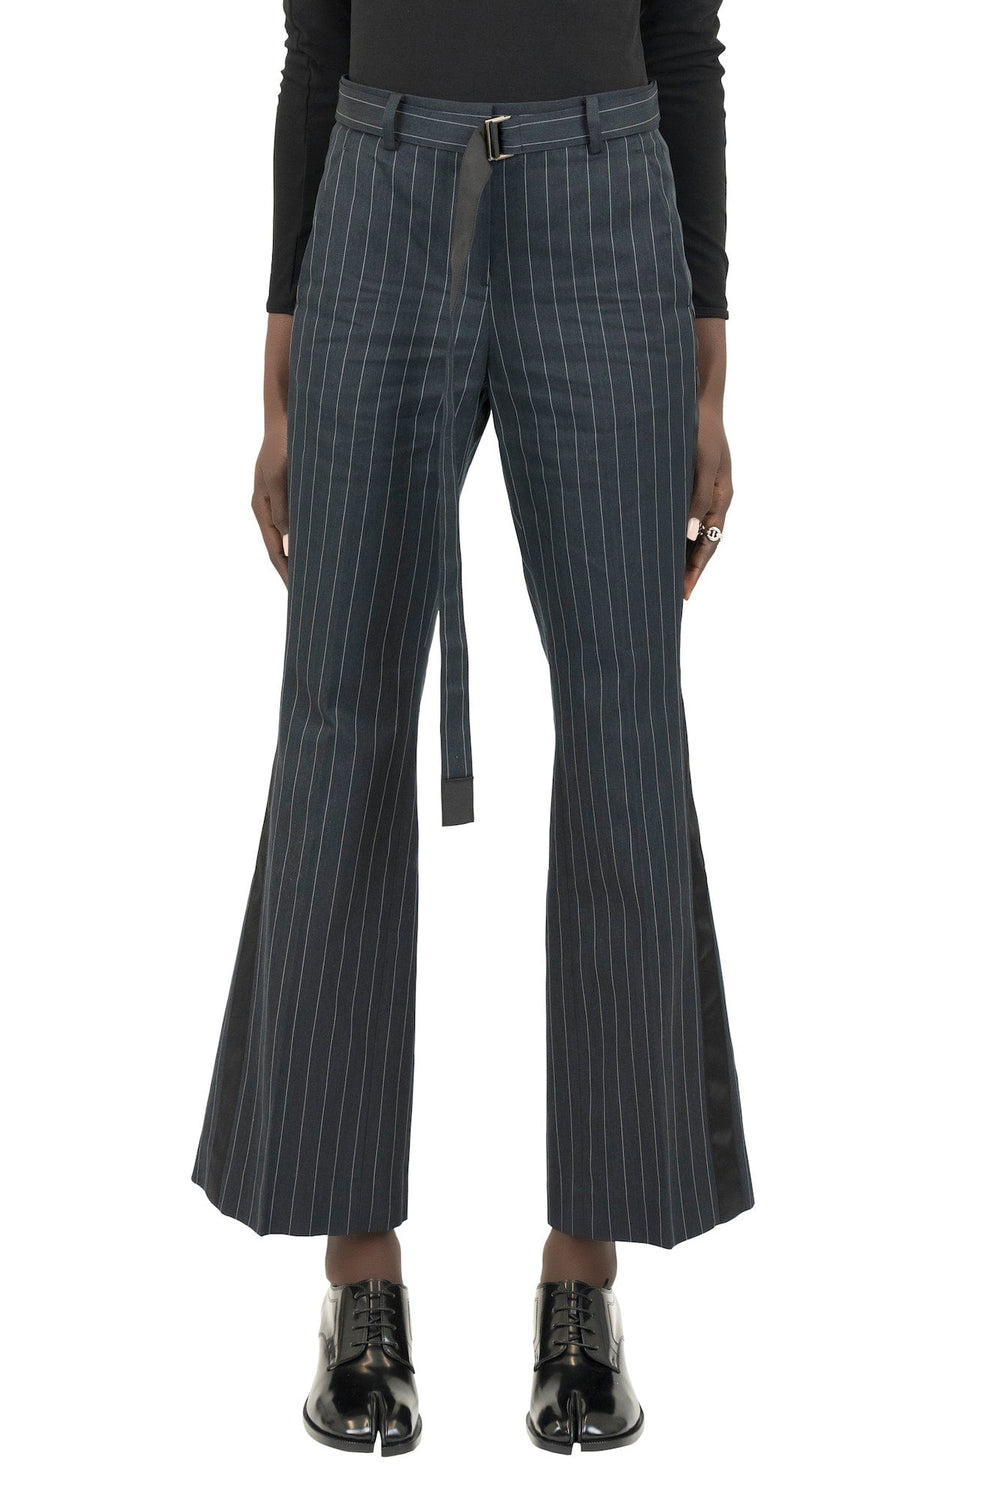 激安通販店舗 sakai 関税込み Women's Chalk Stripe Pants - レディースファッション>ボトムス>パンツ